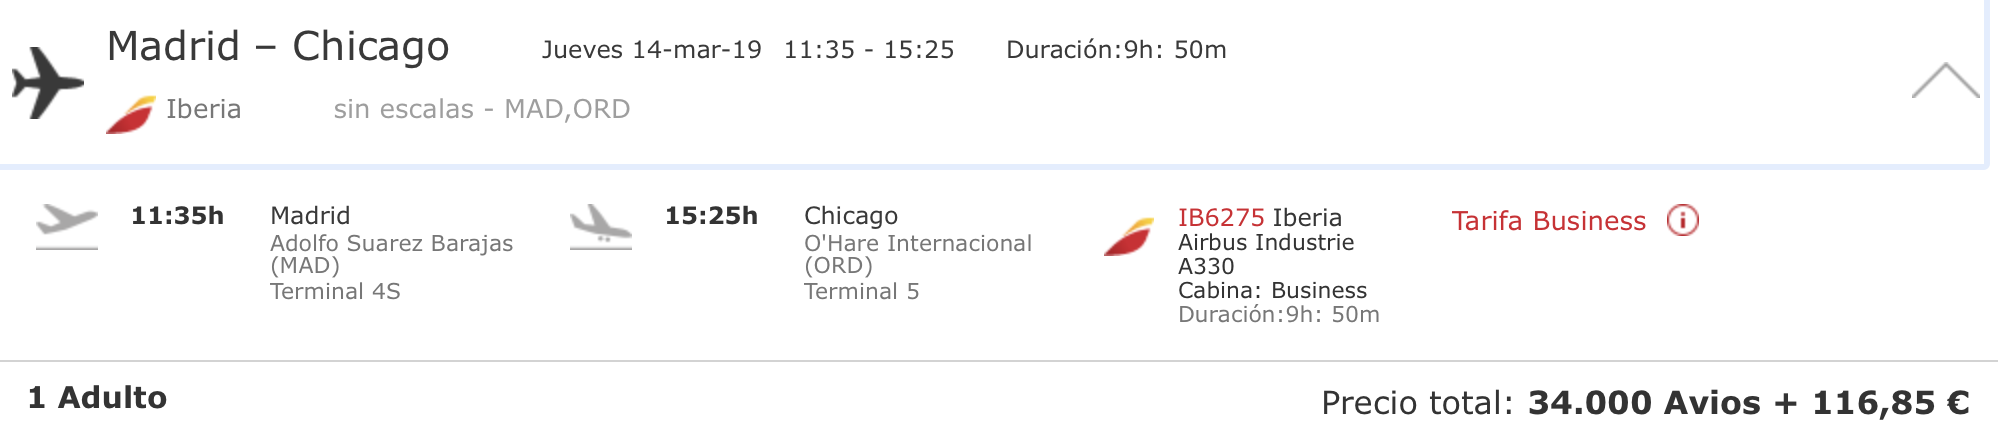 Iberia Business Class Madrid - Chicago Iberia Plus